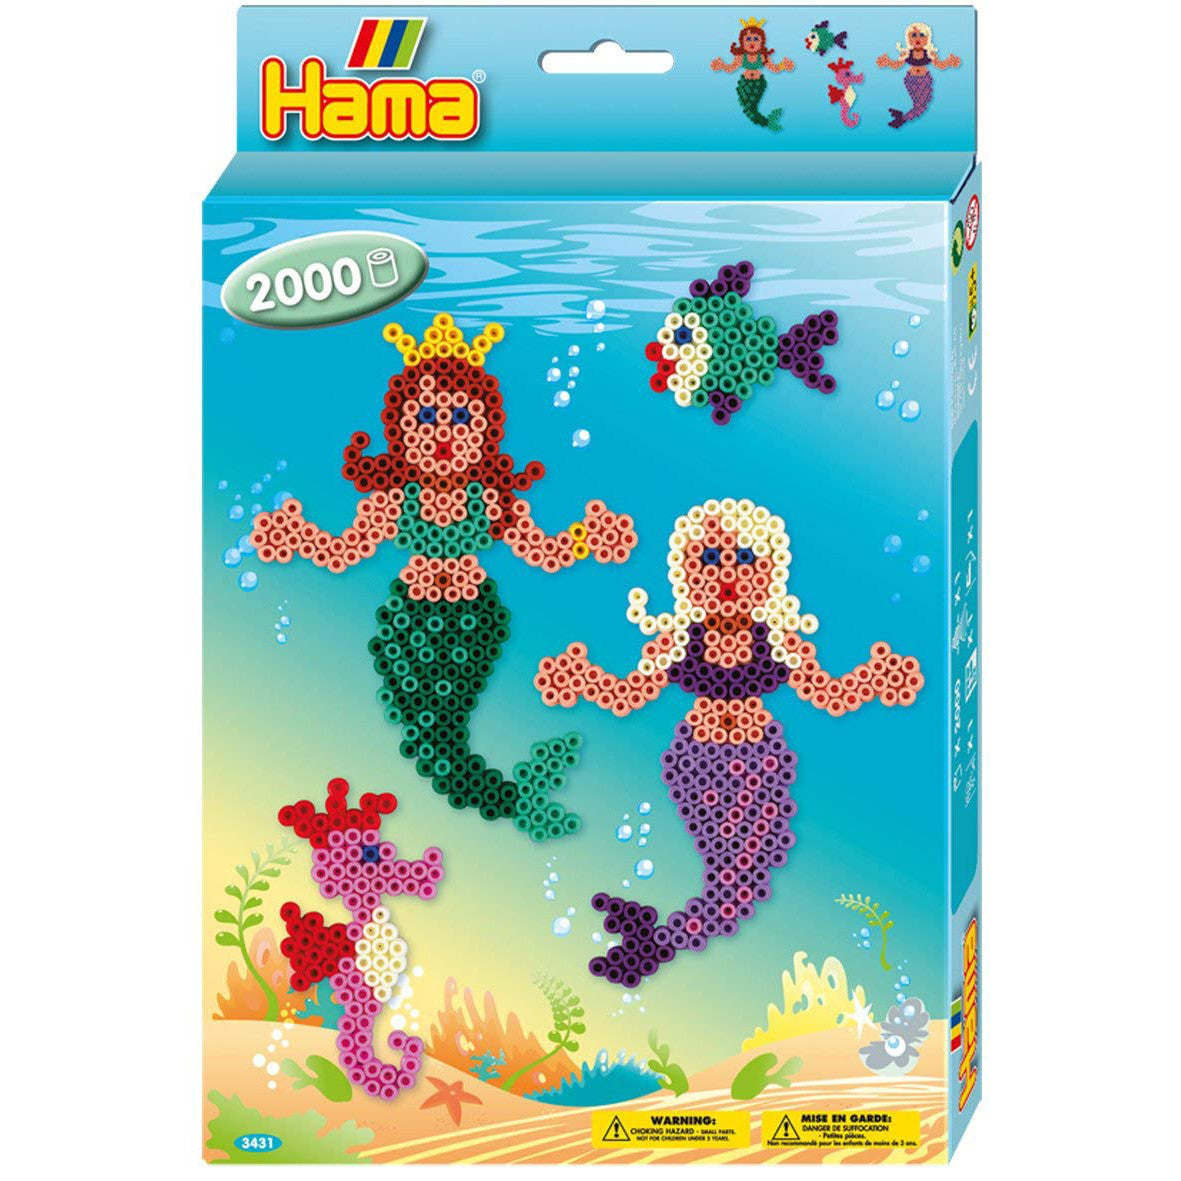 Hama Box Mermaids